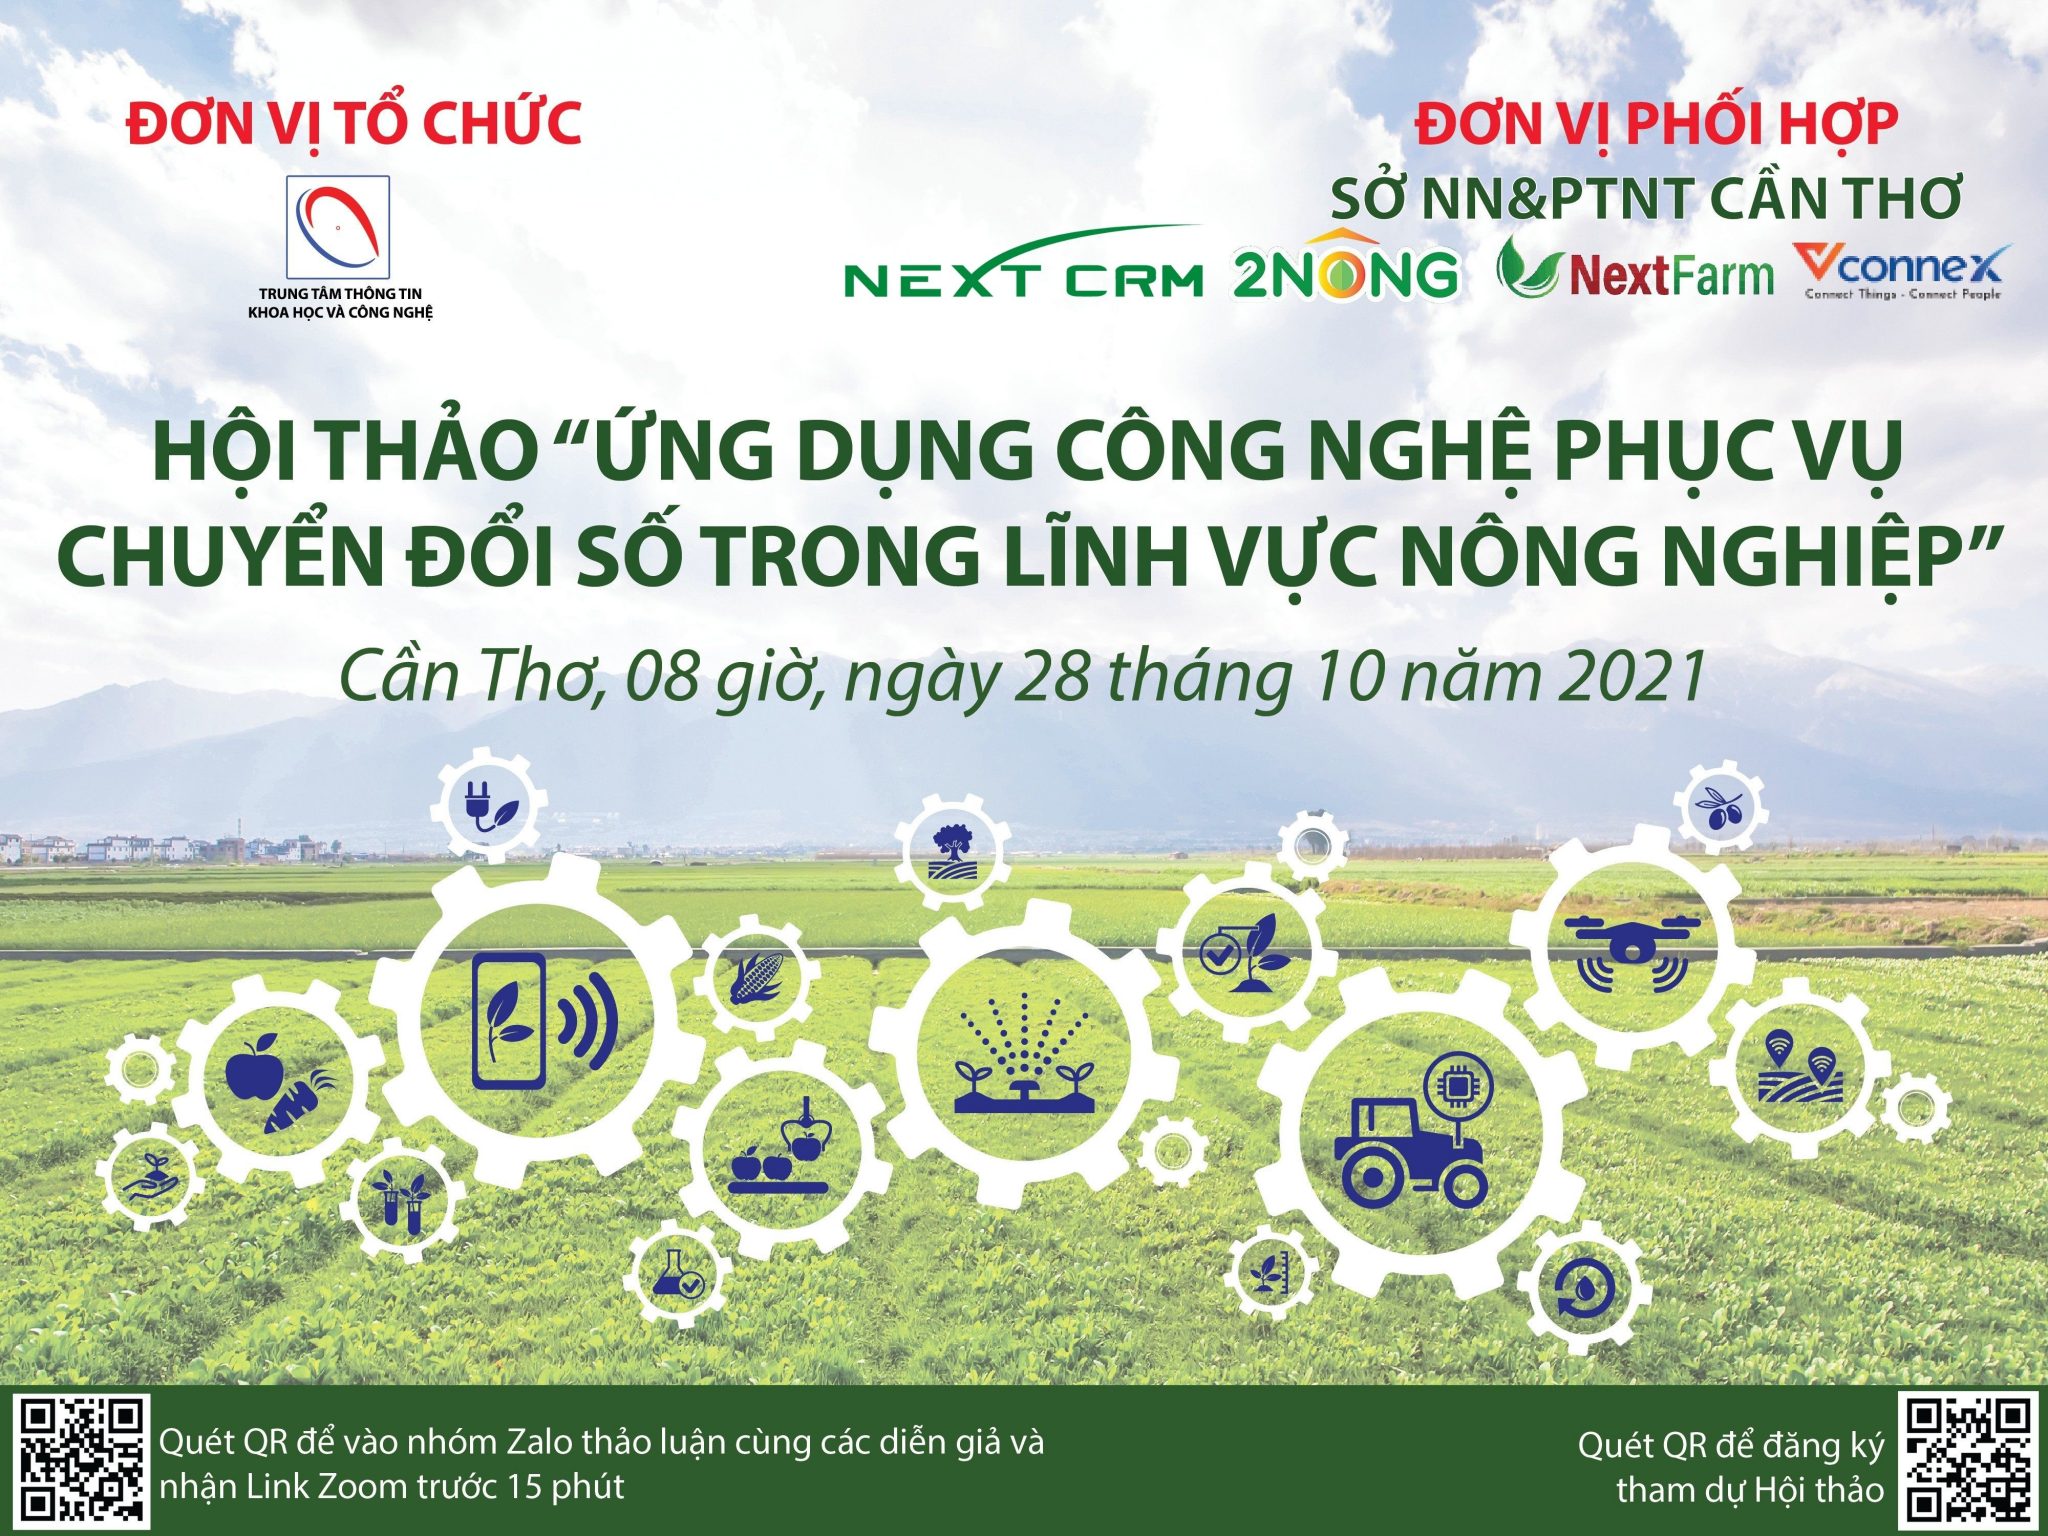 Đại diện NextX phối hợp với sở KH&CN Cần Thơ “Đưa nông nghiệp lên sàn TMĐT”